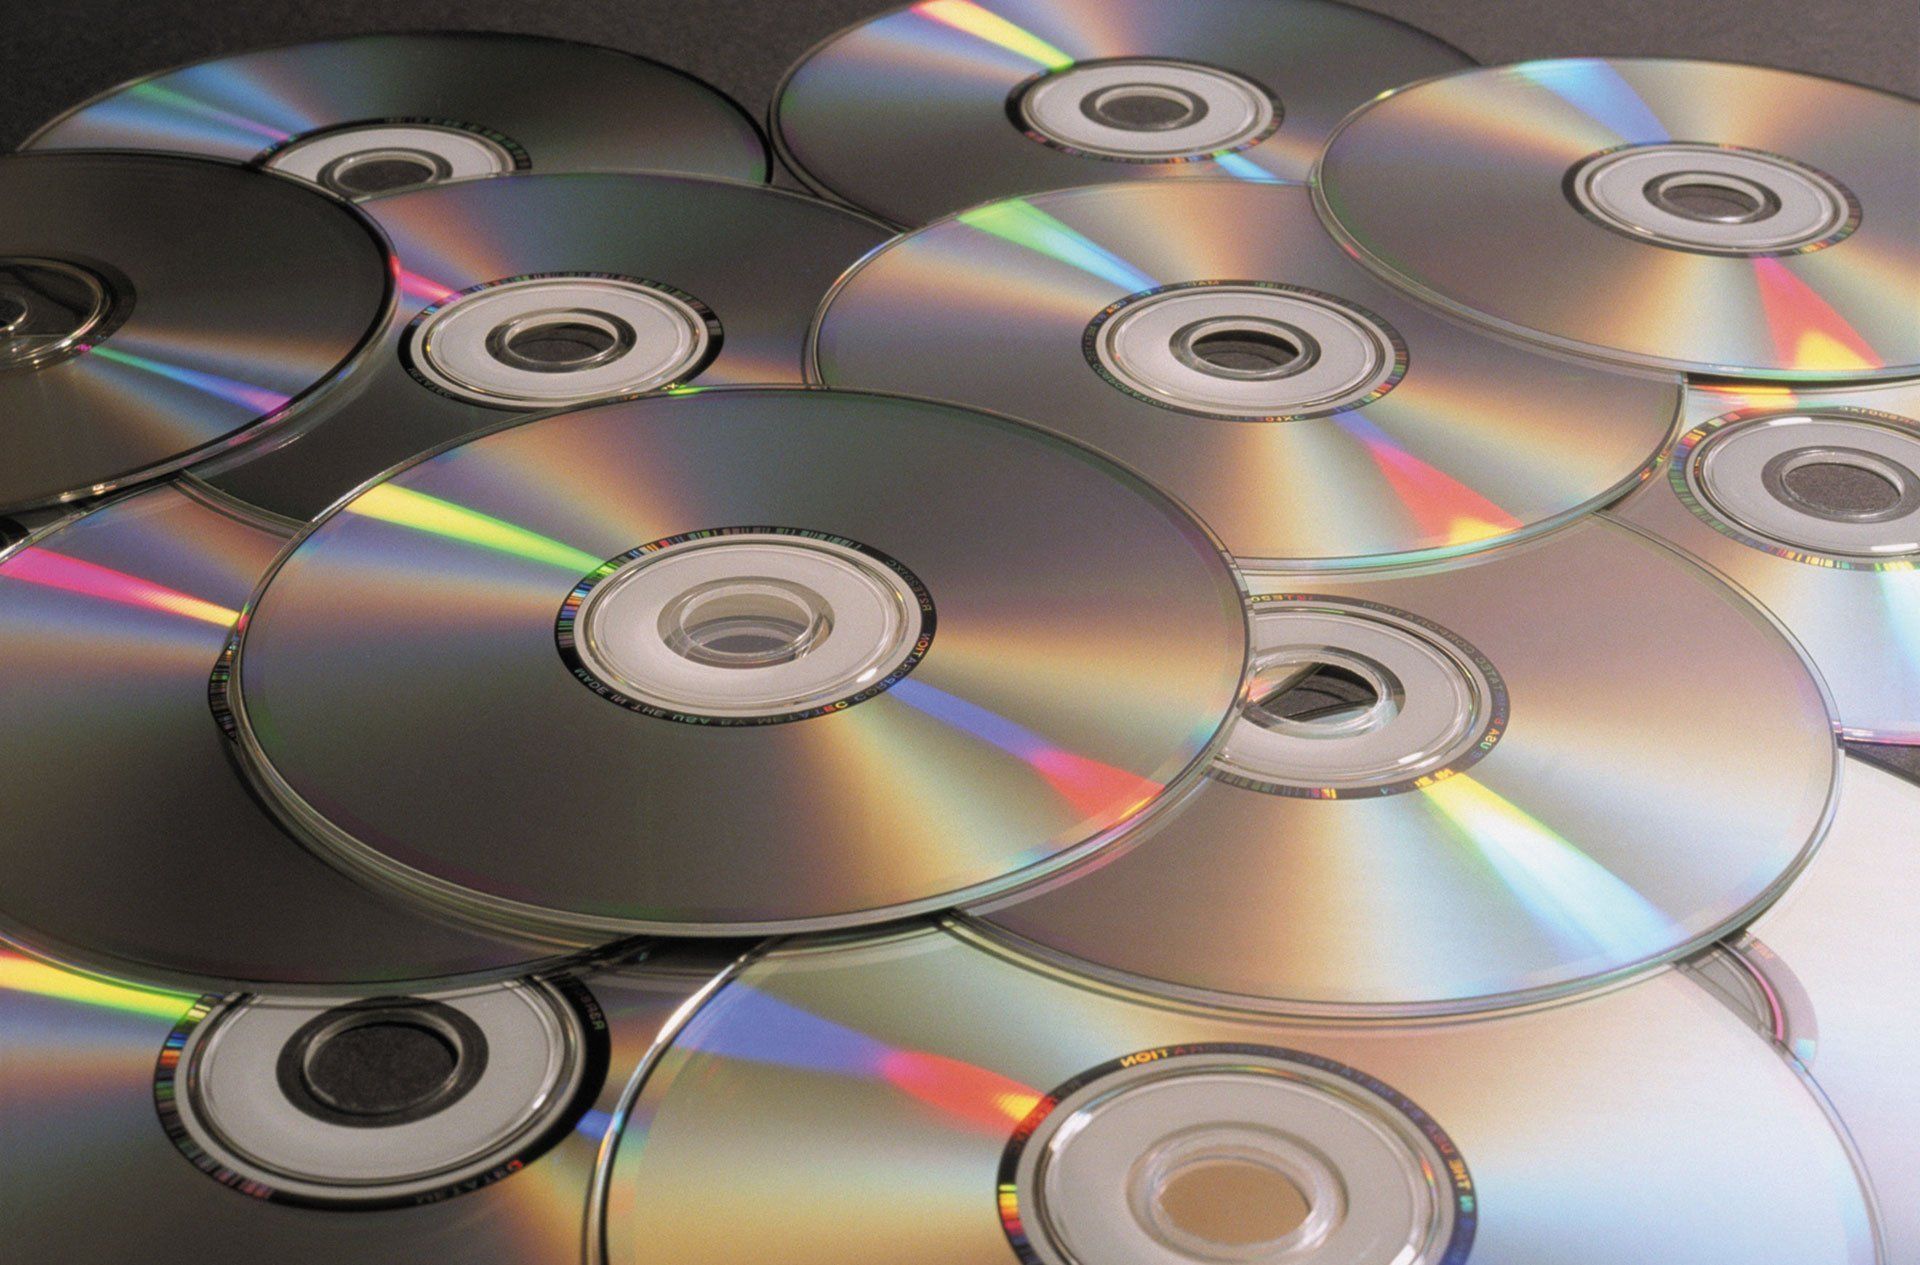 several DVDs